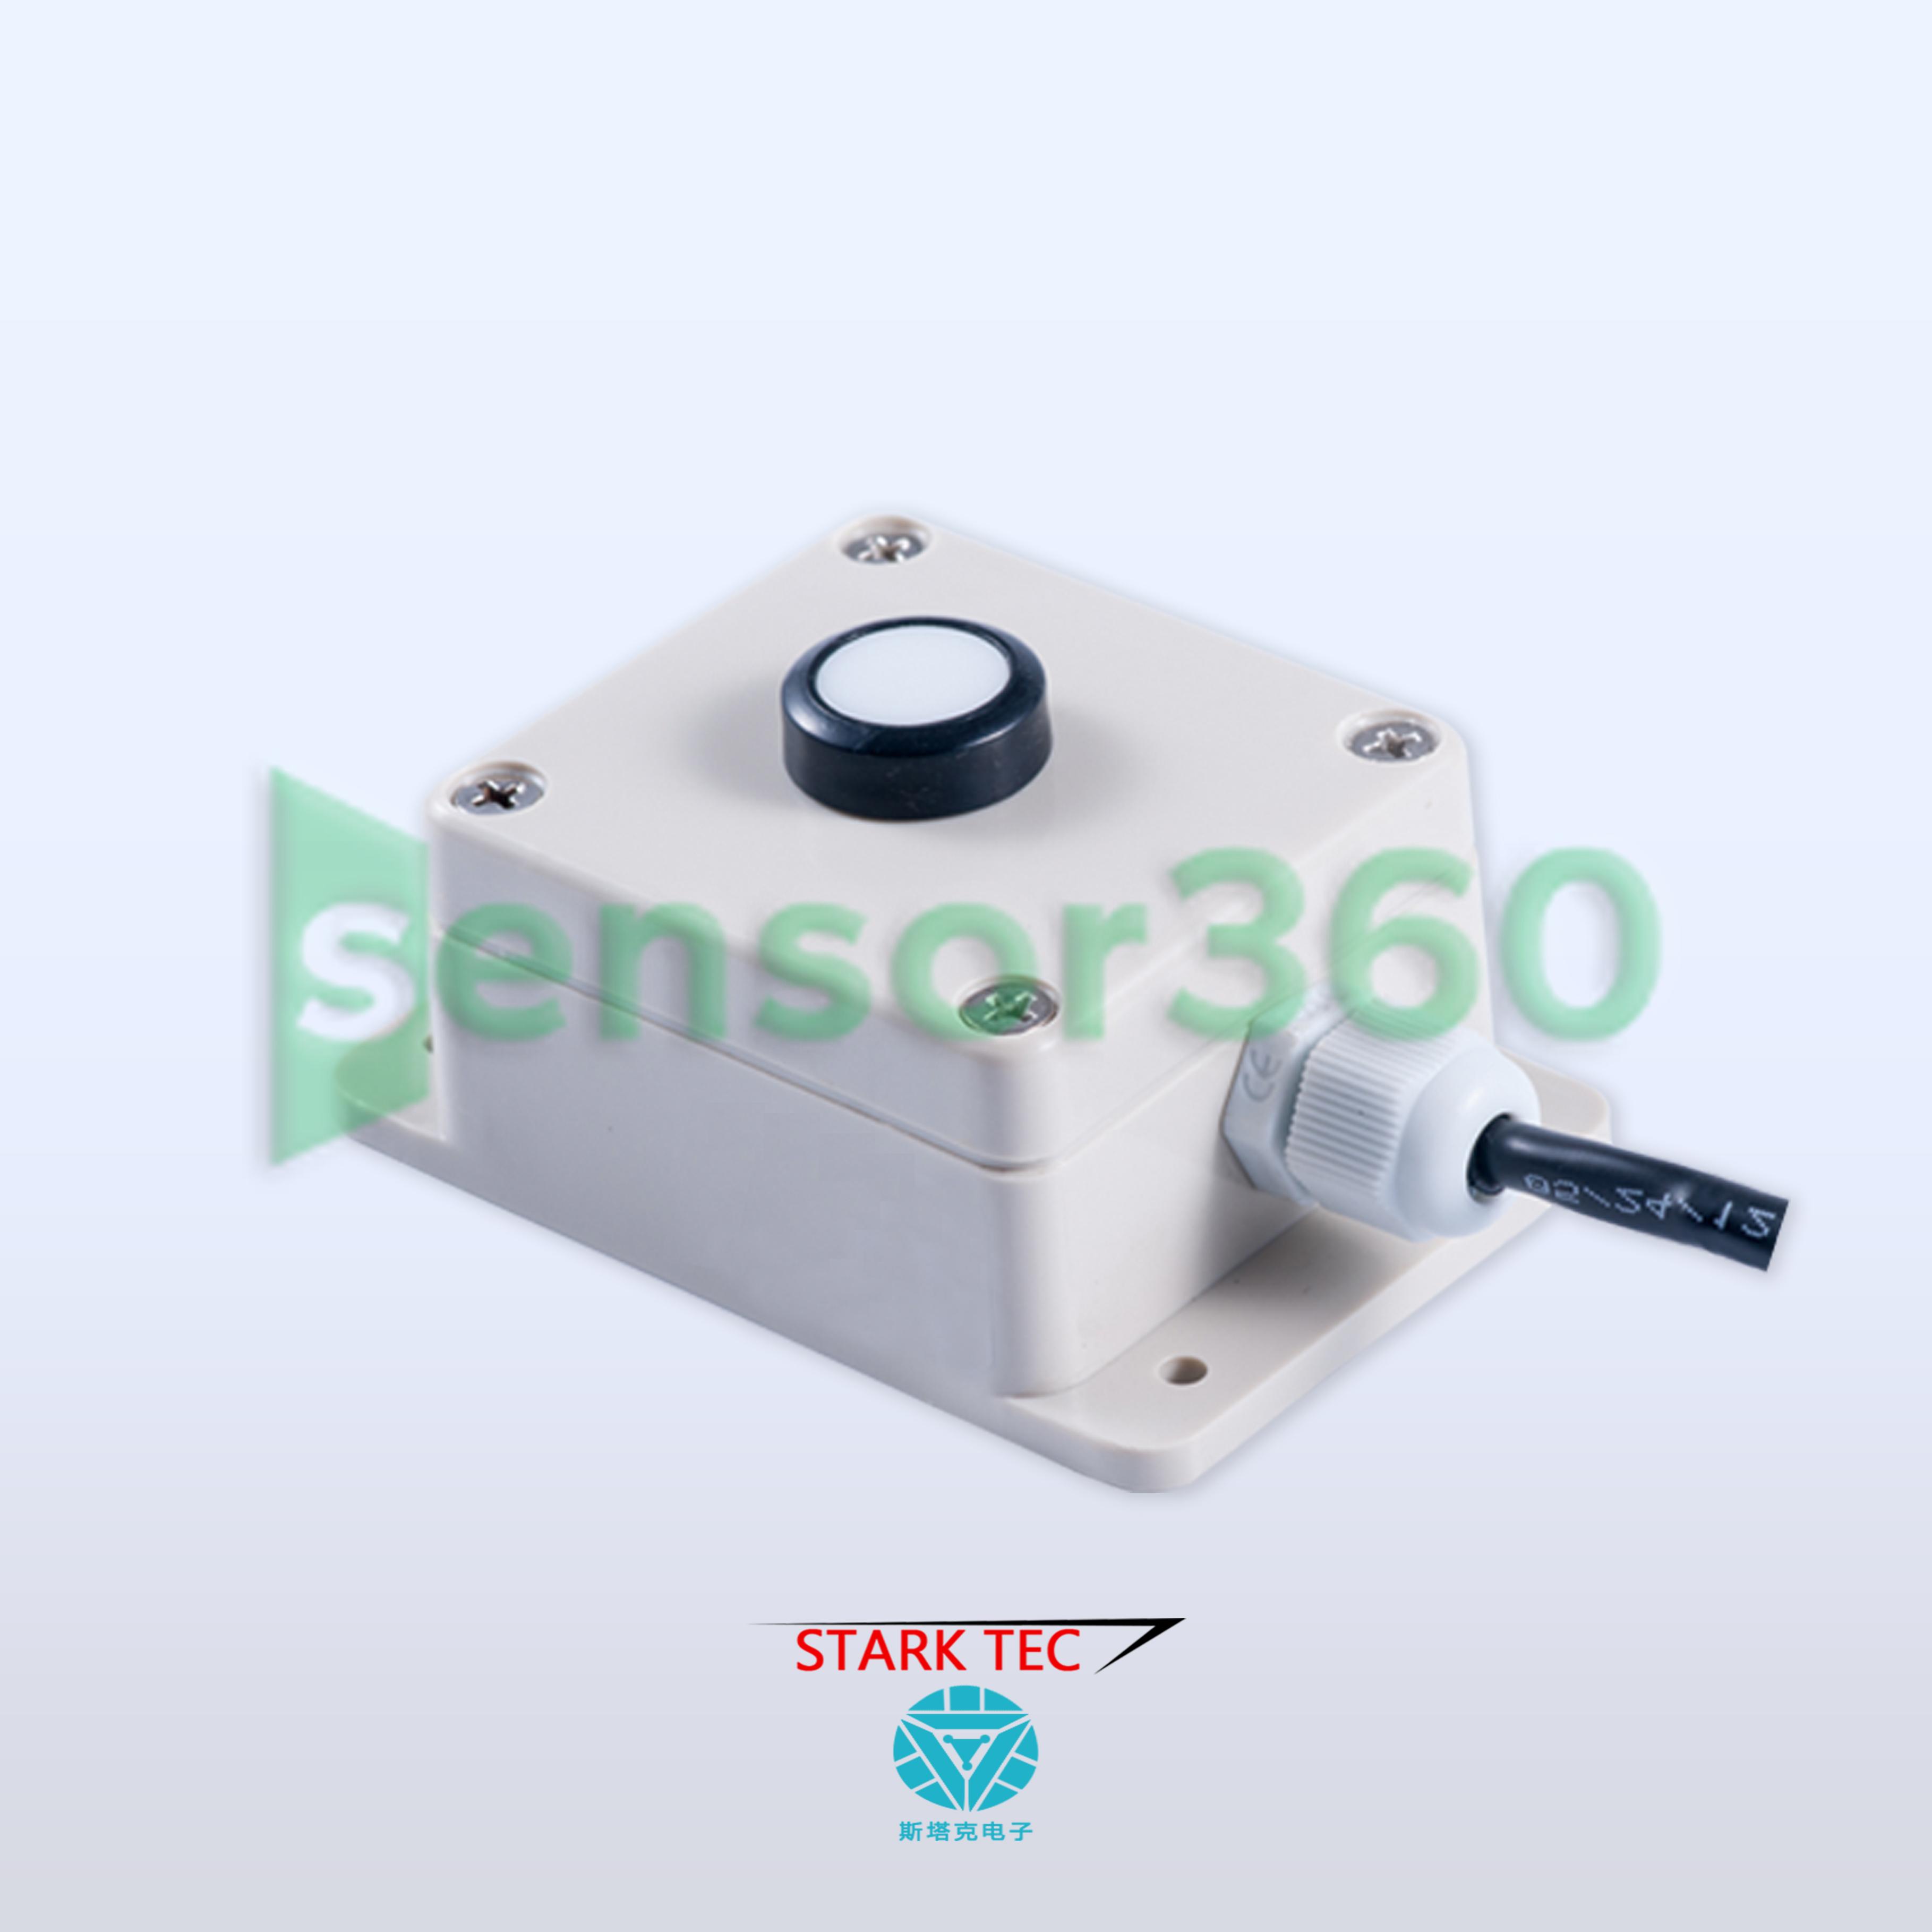 ST-GZ01 light sensor